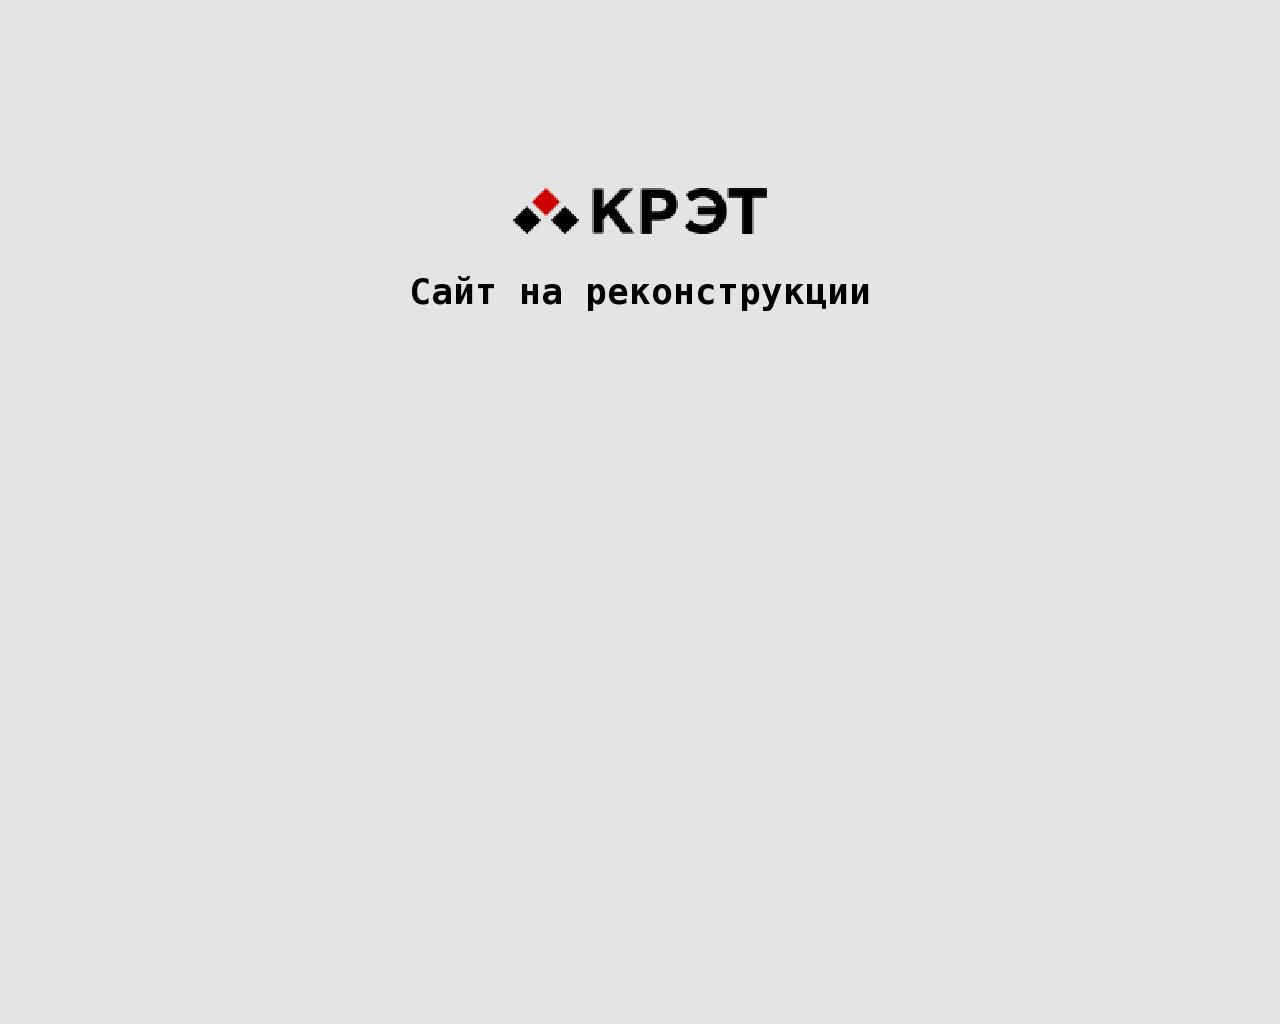 Изображение сайта кбпа.рф в разрешении 1280x1024